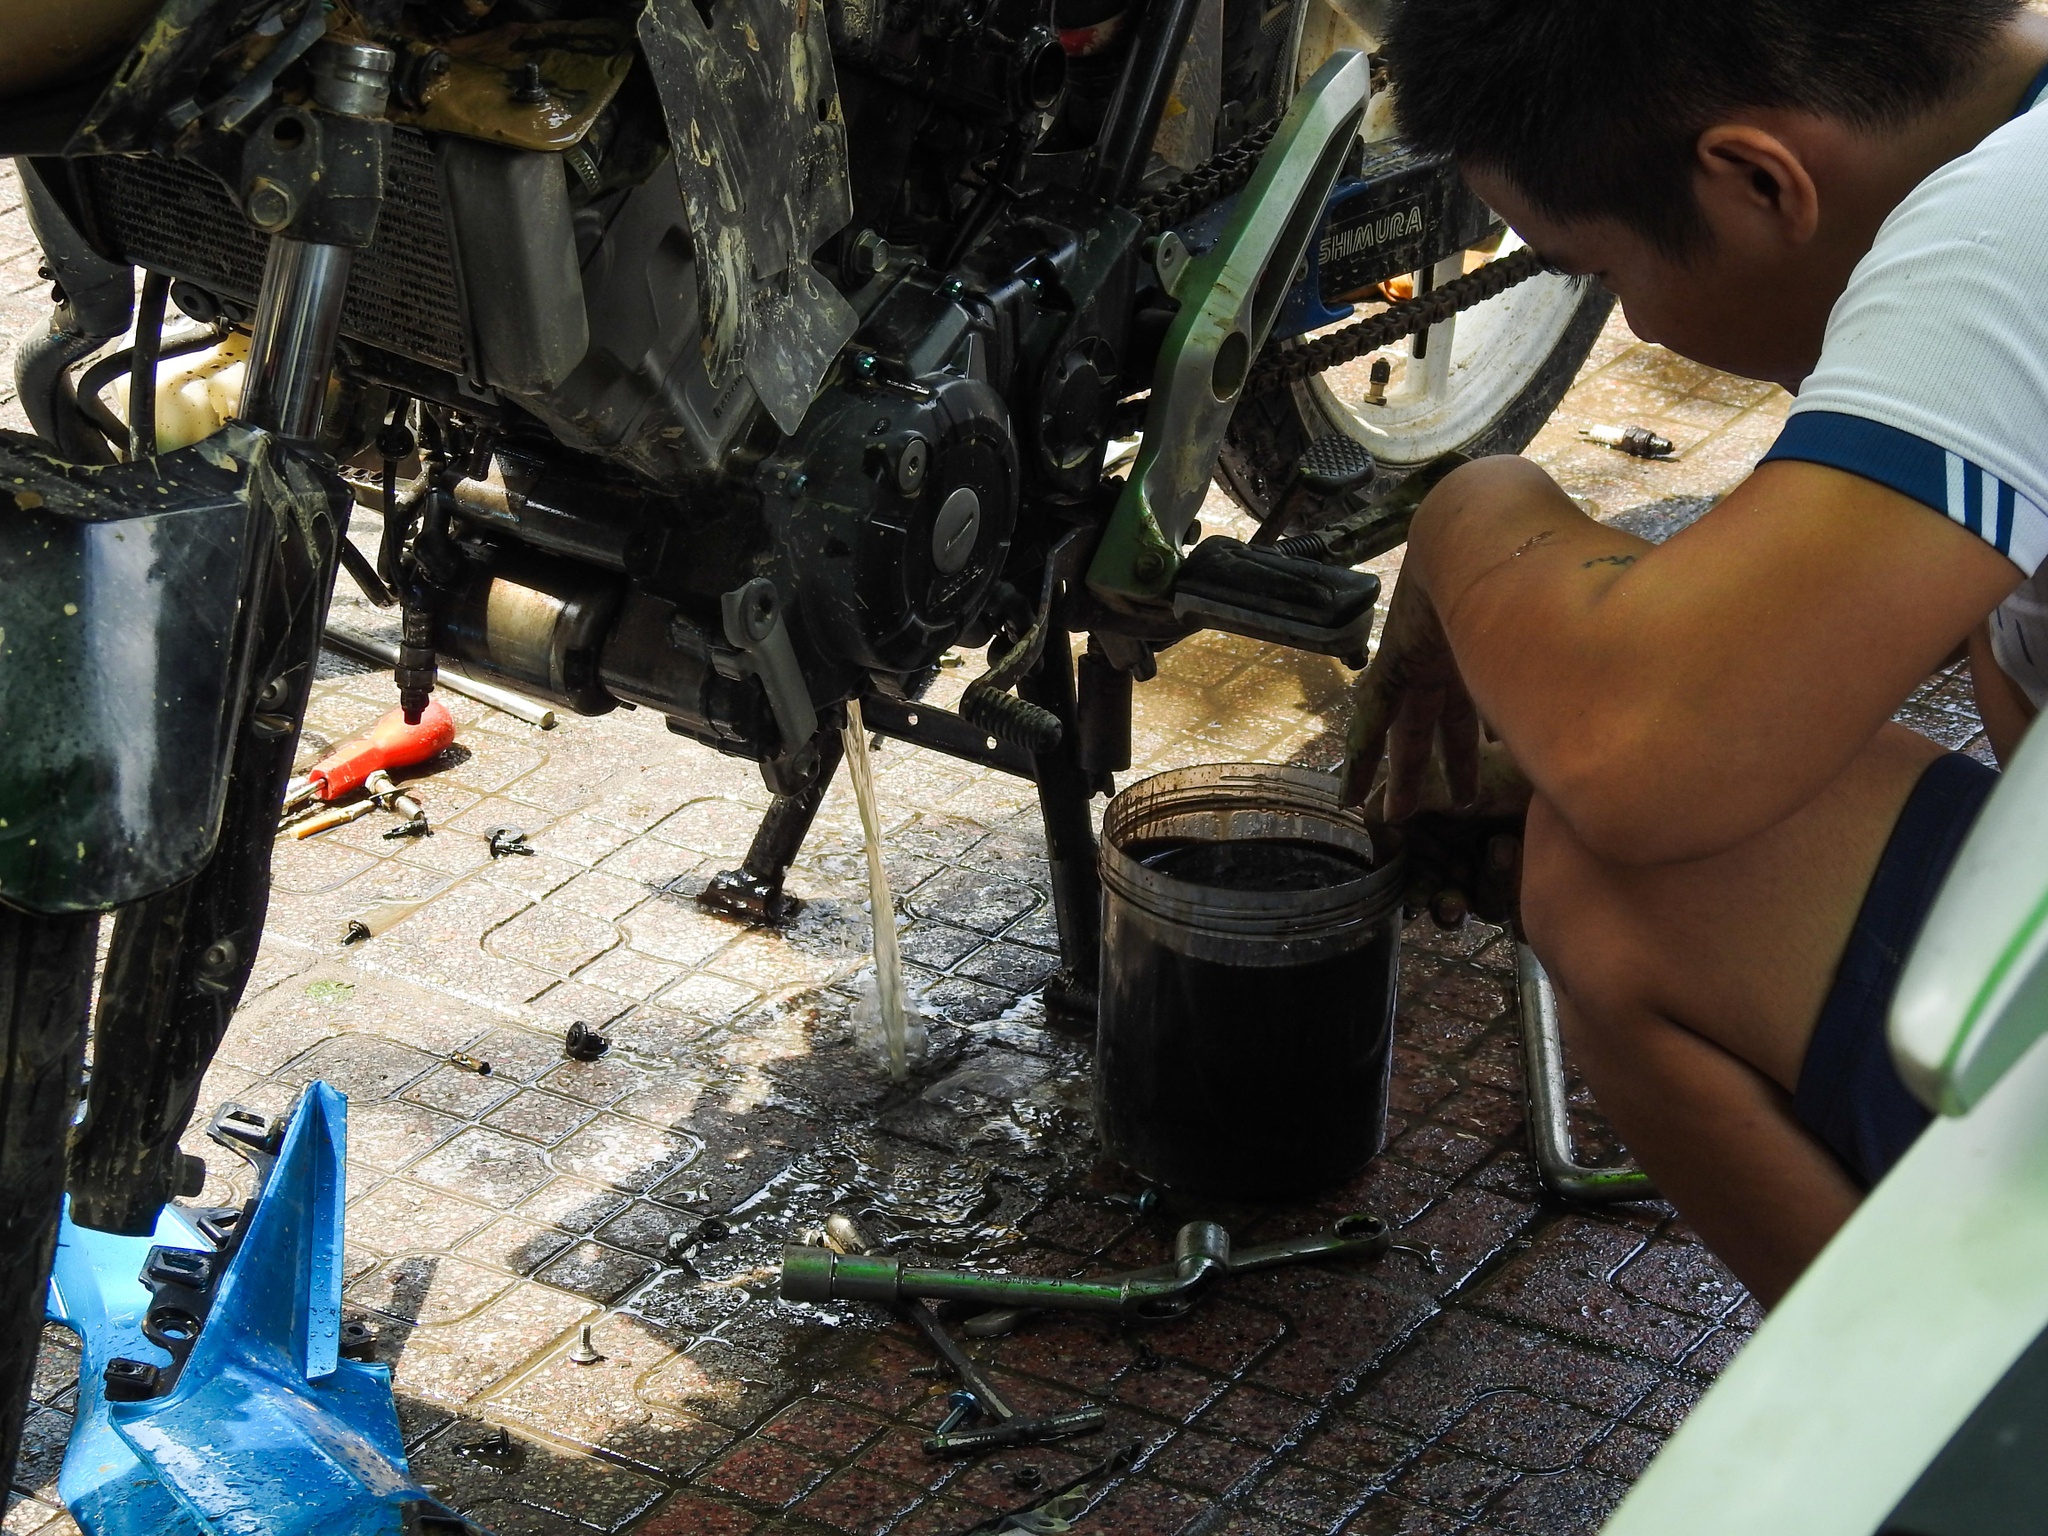 Nhóm thợ xứ Quảng ăn cơm hộp, ngủ nhà nghỉ sửa xe miễn phí cho sinh viên - ảnh 4